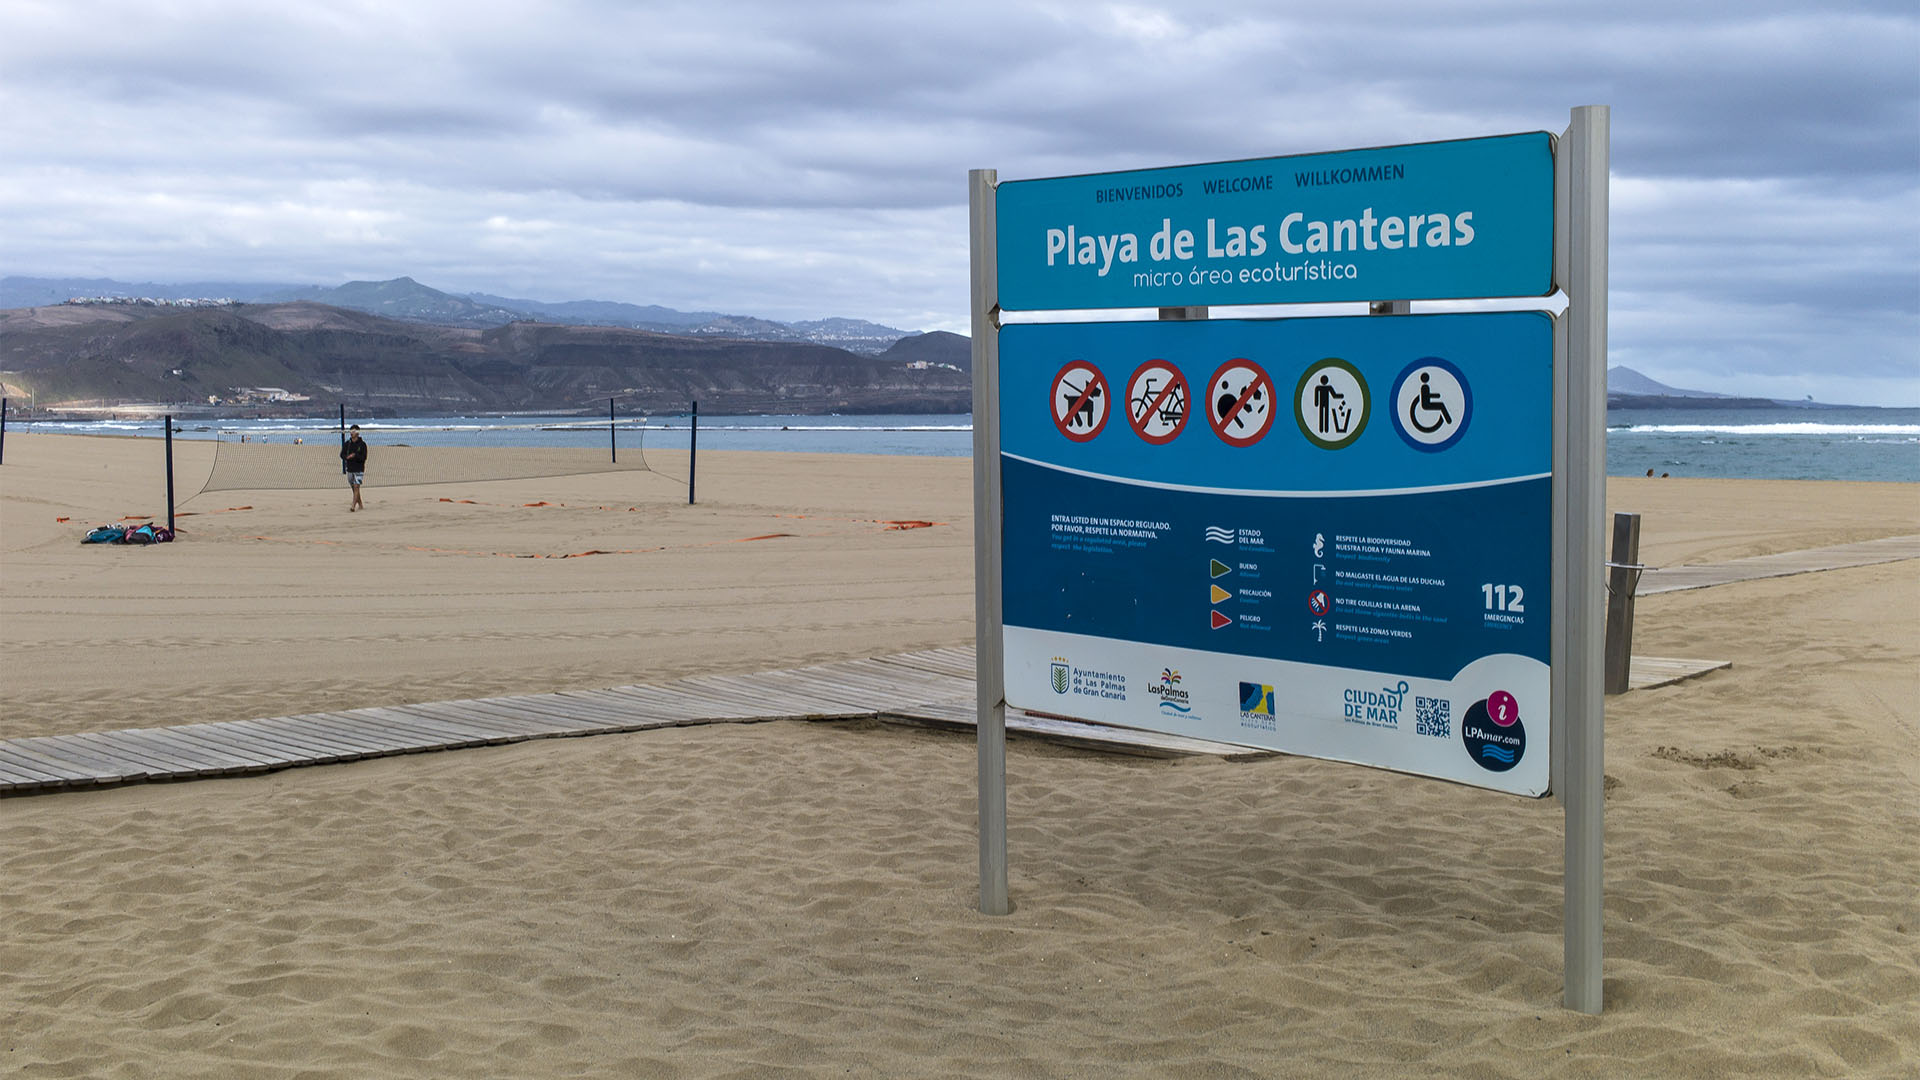 Playa de las Canteras – Vorbild an Sauberkeit, Ruhe und Sicherheit. Politzisten auf Mountainbikes wachen streng darüber.